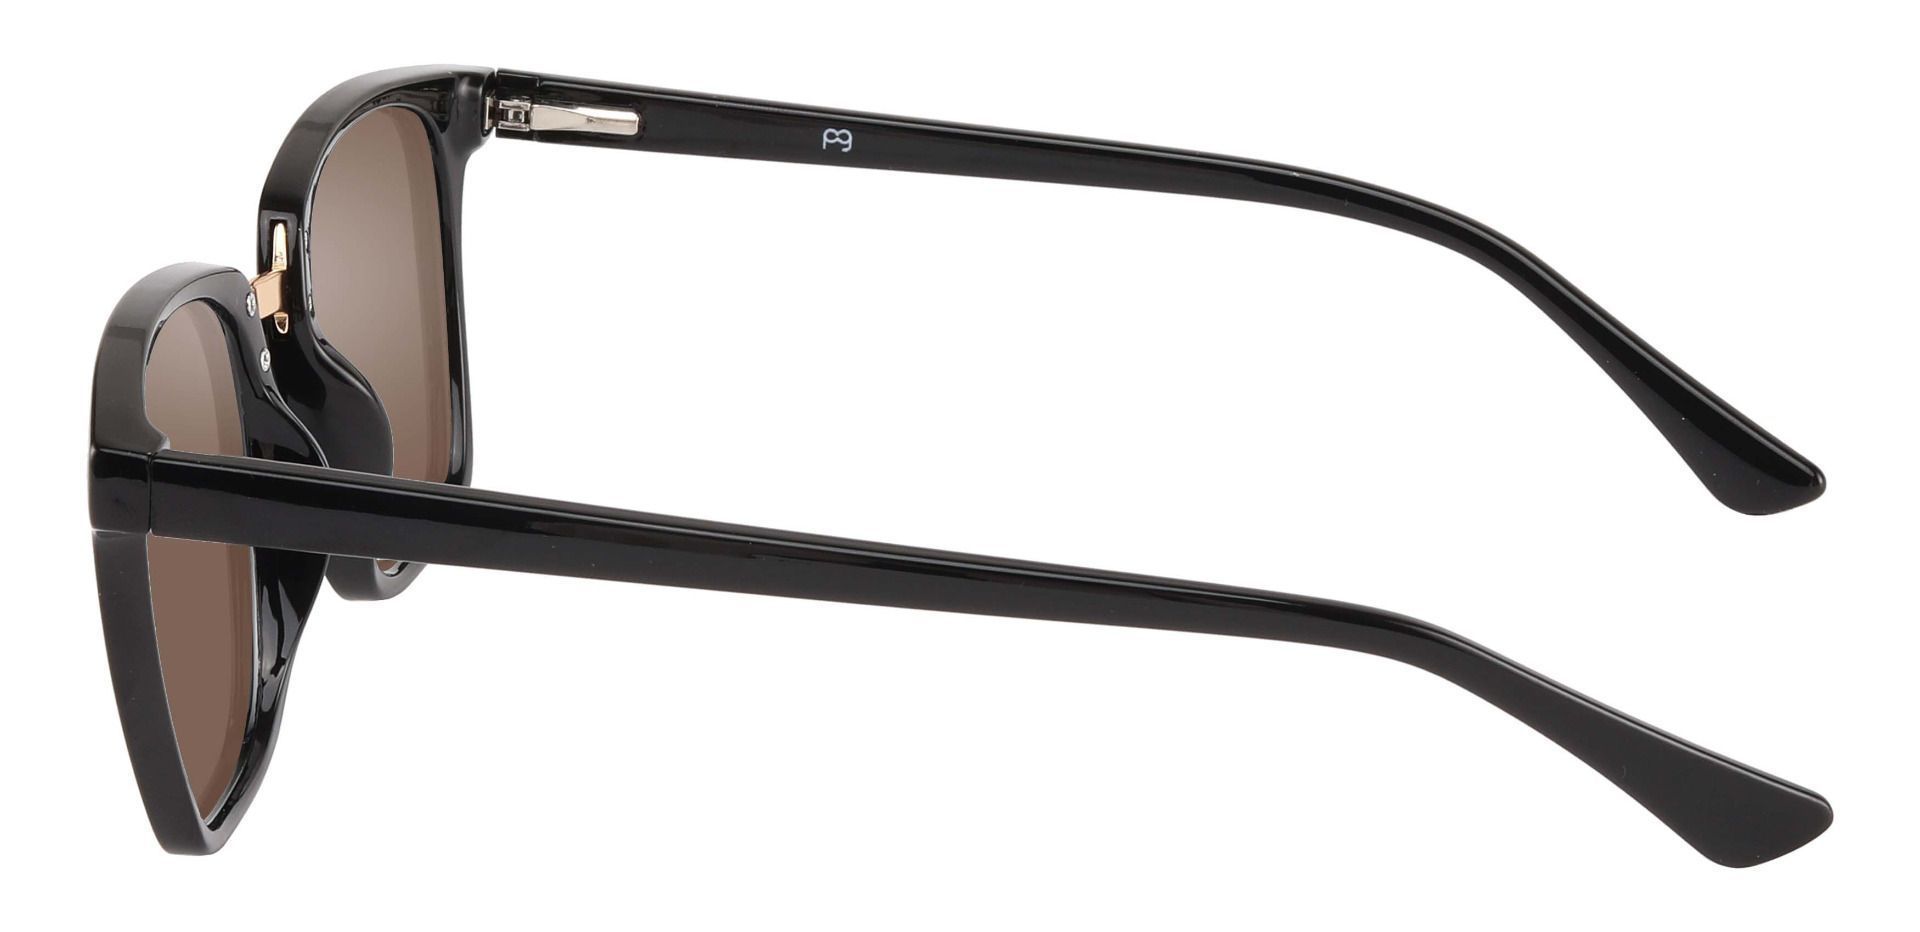 Delta Square Prescription Sunglasses - Black Frame With Brown Lenses